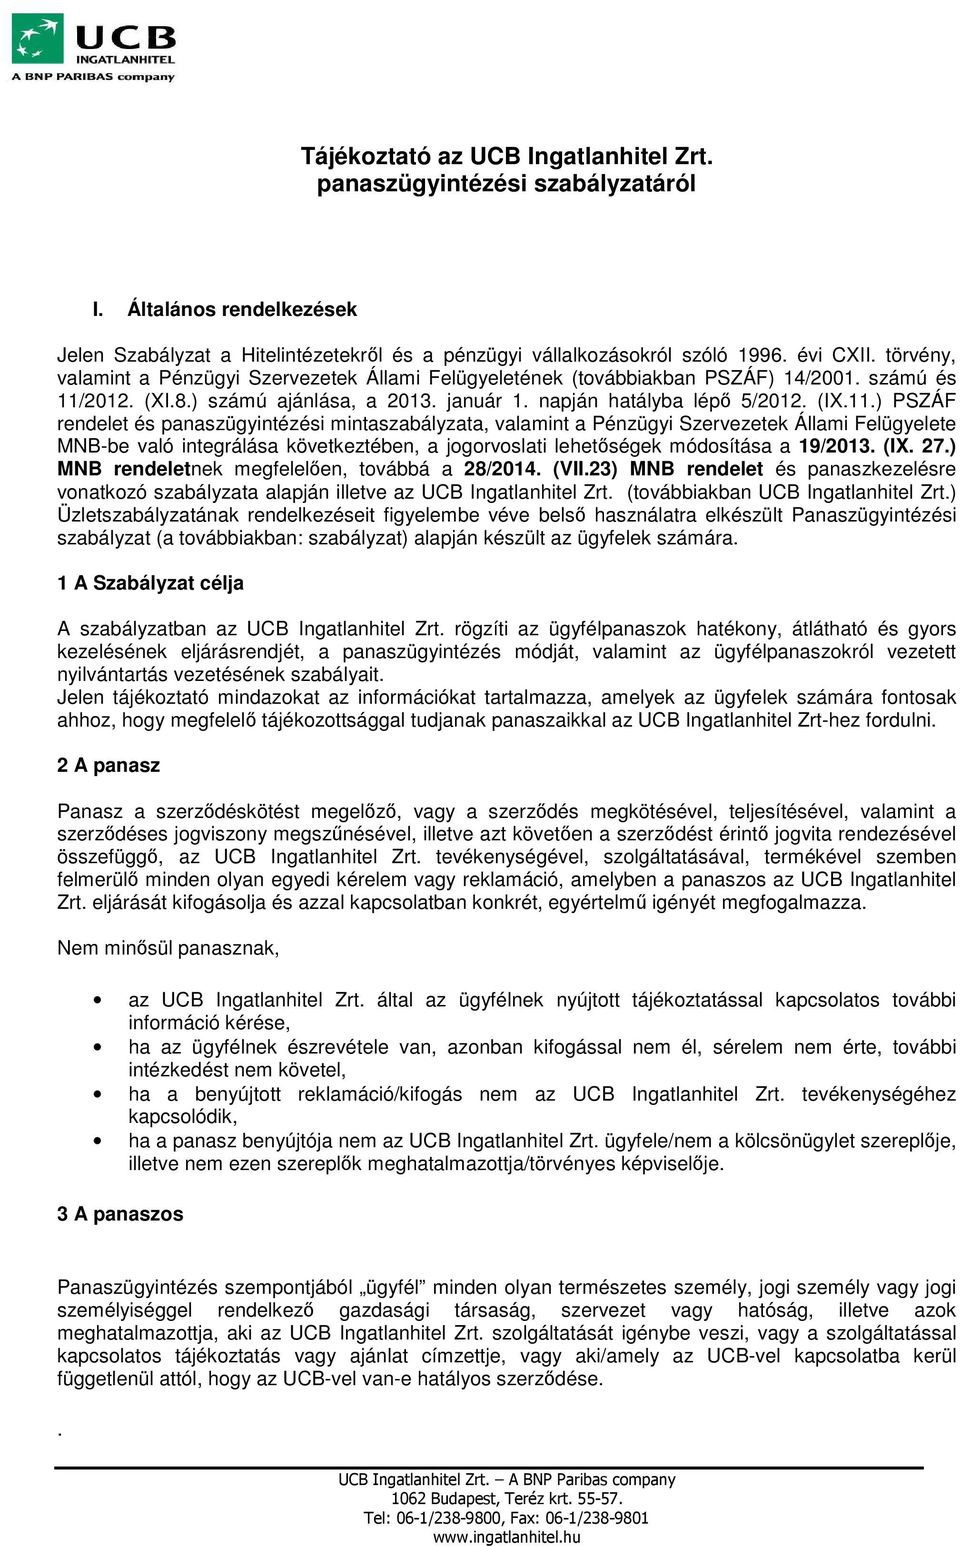 2012. (XI.8.) számú ajánlása, a 2013. január 1. napján hatályba lépő 5/2012. (IX.11.